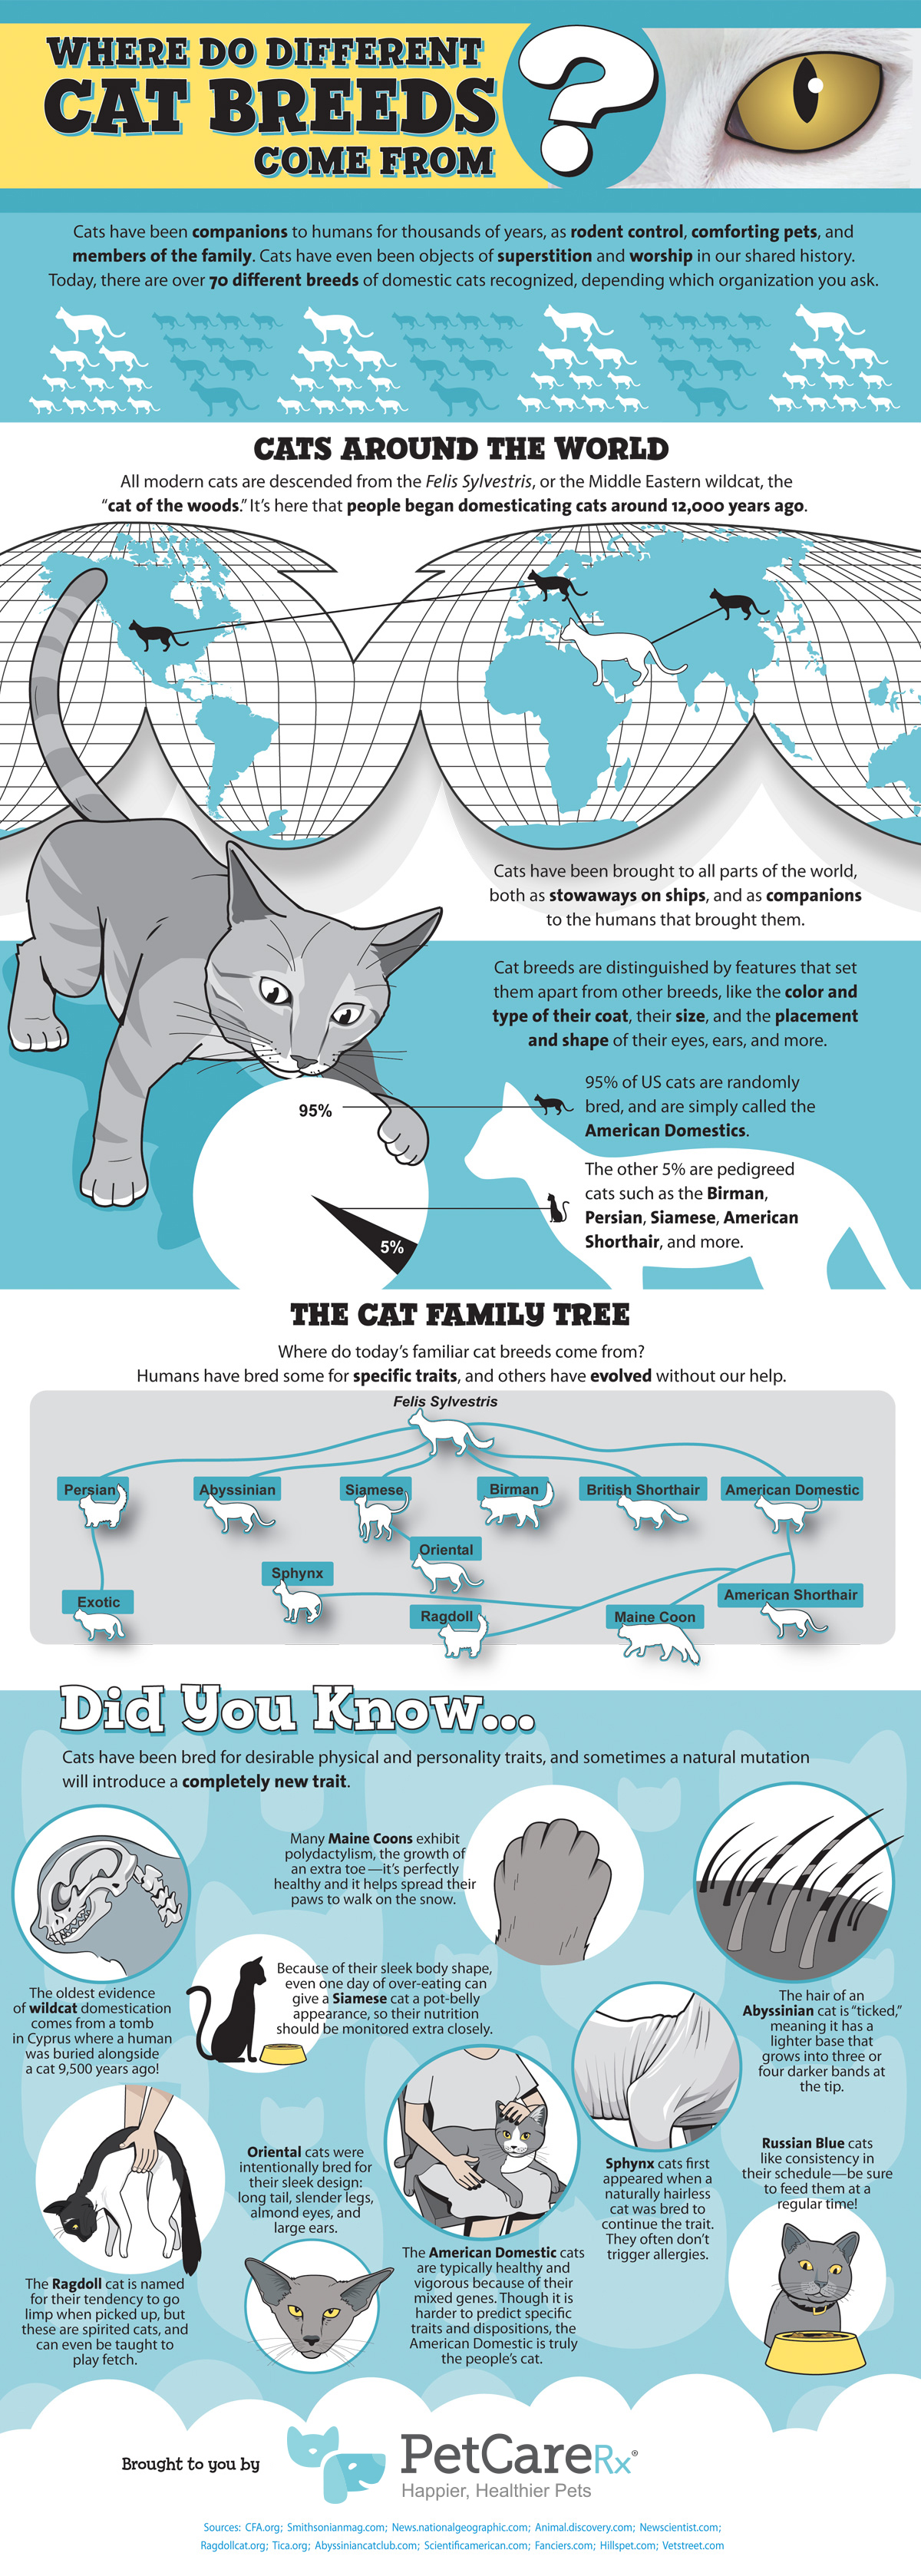 PetCareRx - Where Do Cat Breeds Come From?